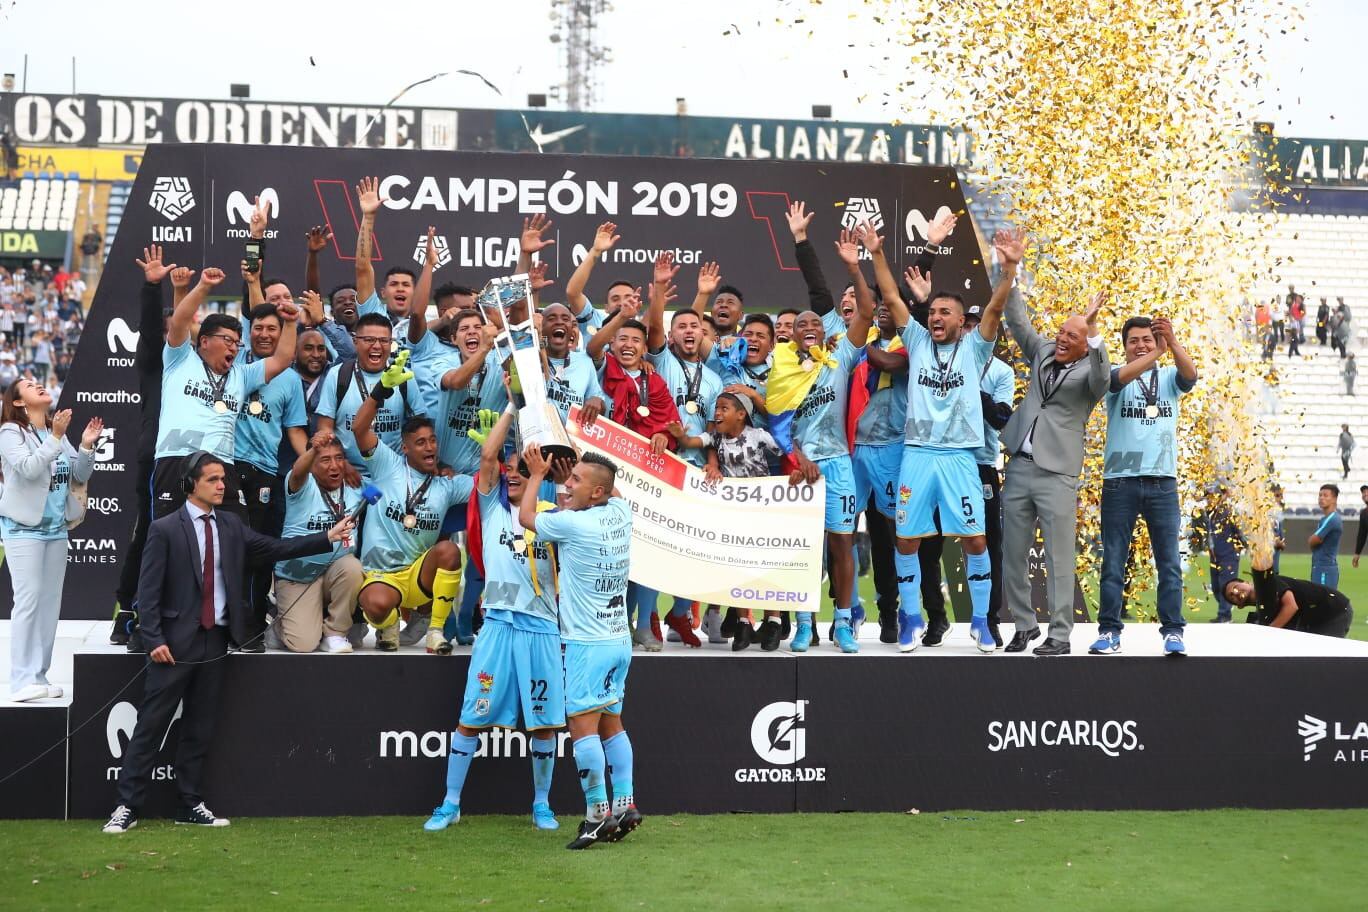 Binacional de Puno se llevó el título de campeón del fútbol peruano en Matute.